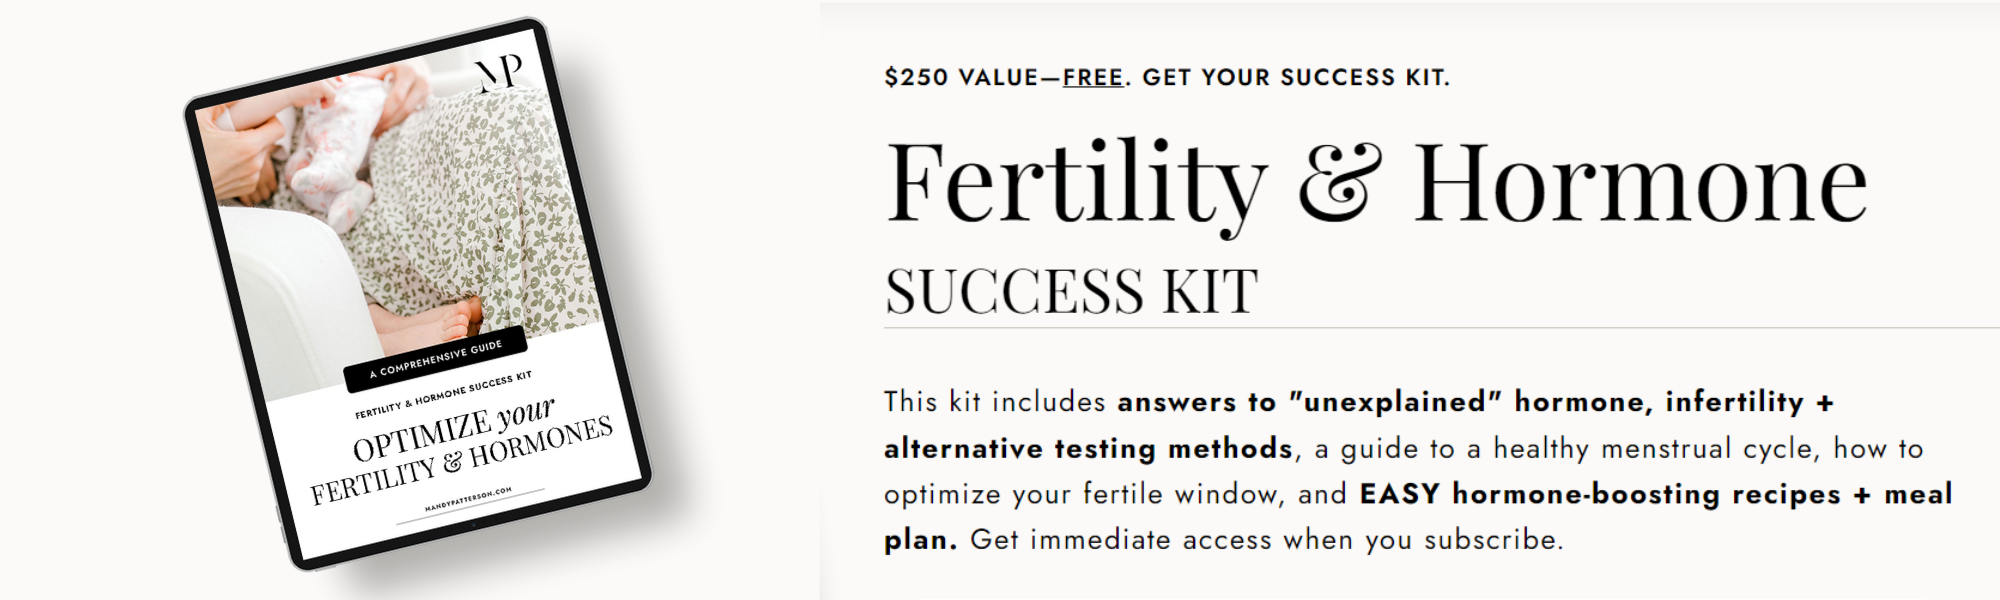 Fertility & Hormone SUCCESS KIT